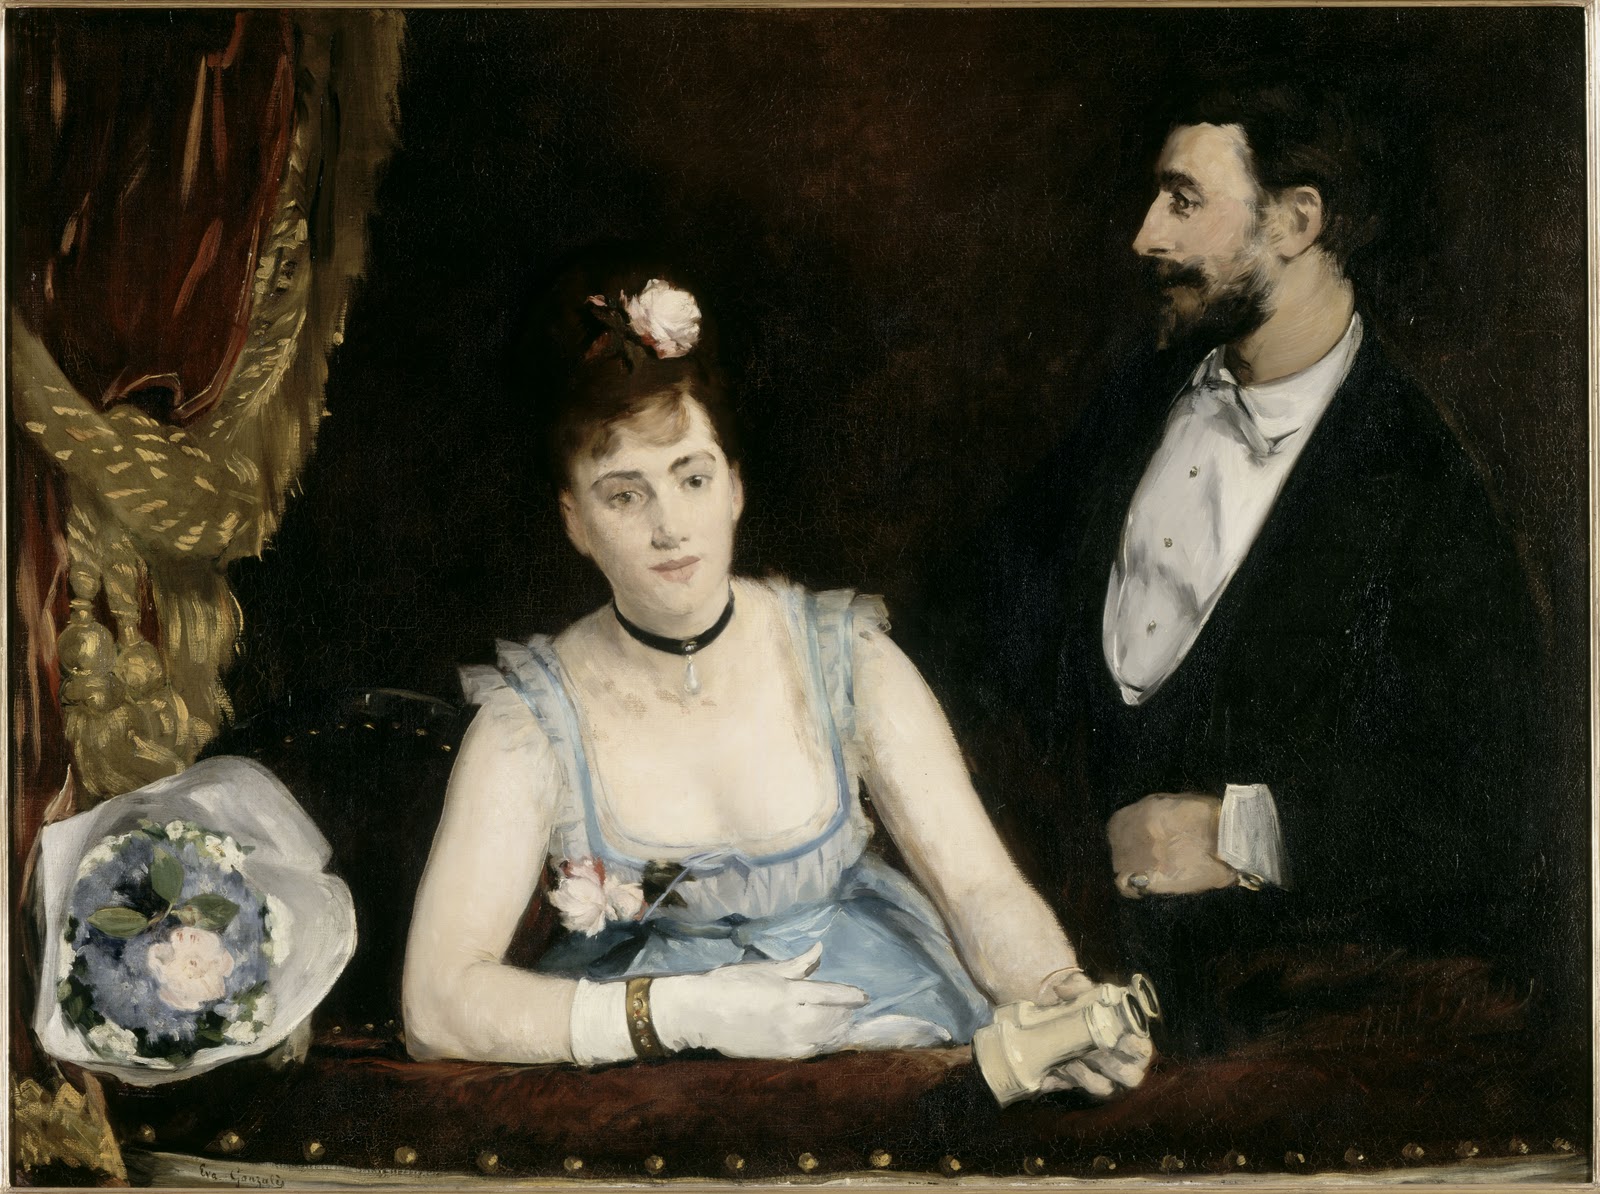 Palco en el Théâtre-Italien by Eva Gonzalès - 1874 - 98 x 140 cm Musée d'Orsay